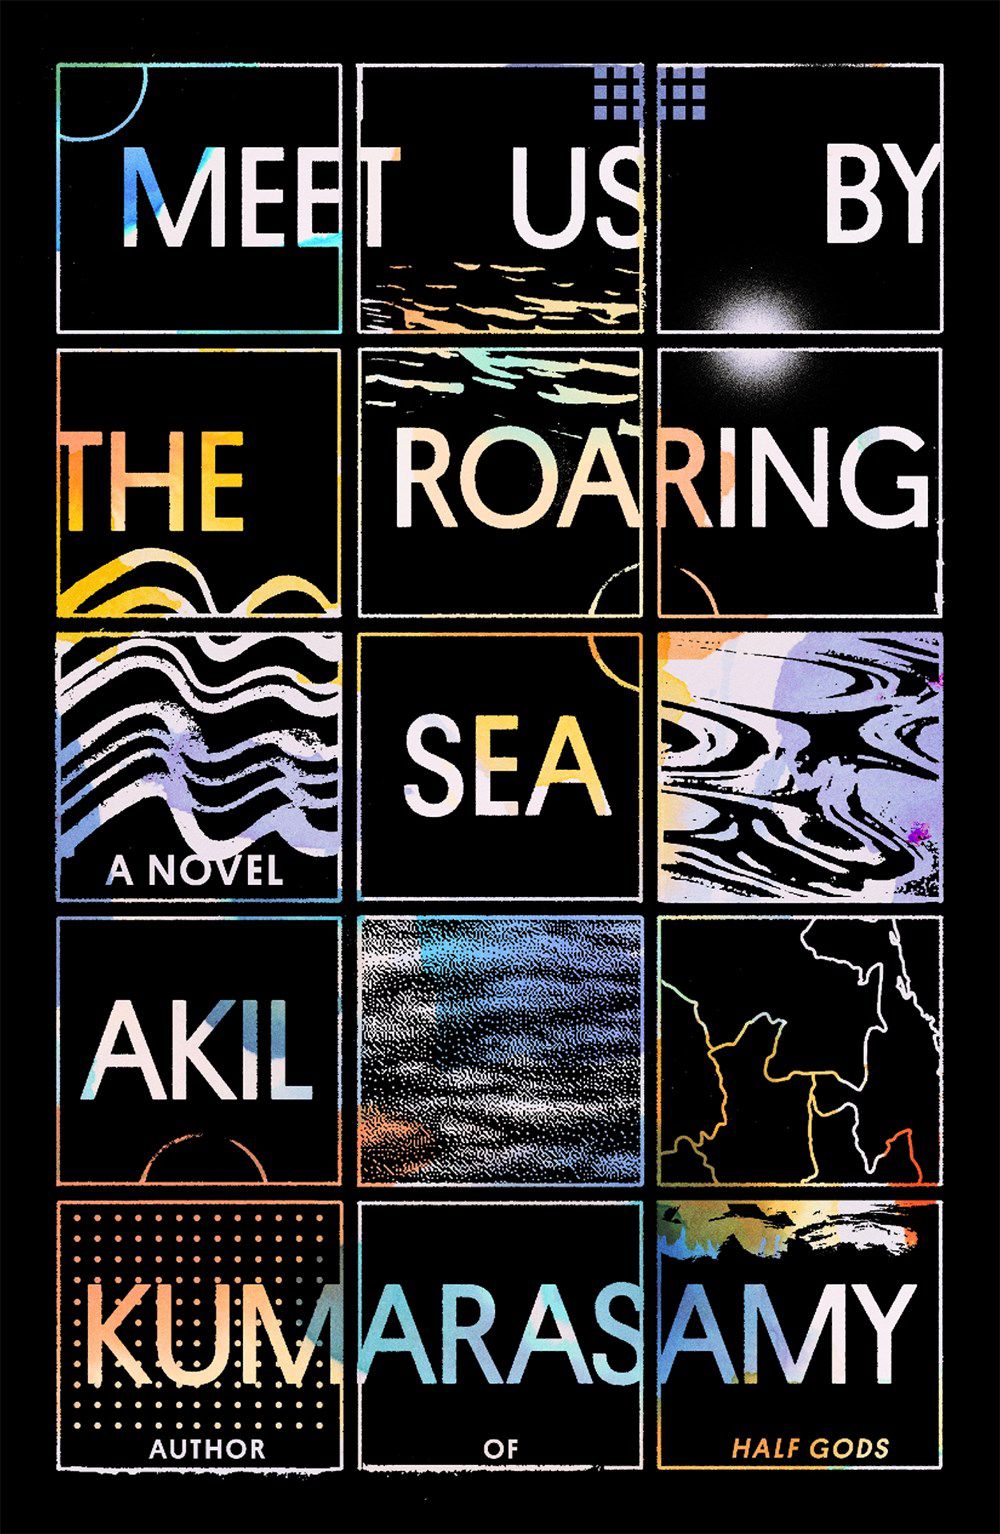 Immagine di copertina di Meet Us by the Roaring Sea di Akil Kumarasamy, un'immagine a griglia con uno sfondo posteriore e immagini geografiche assortite all'interno di ciascuna griglia.